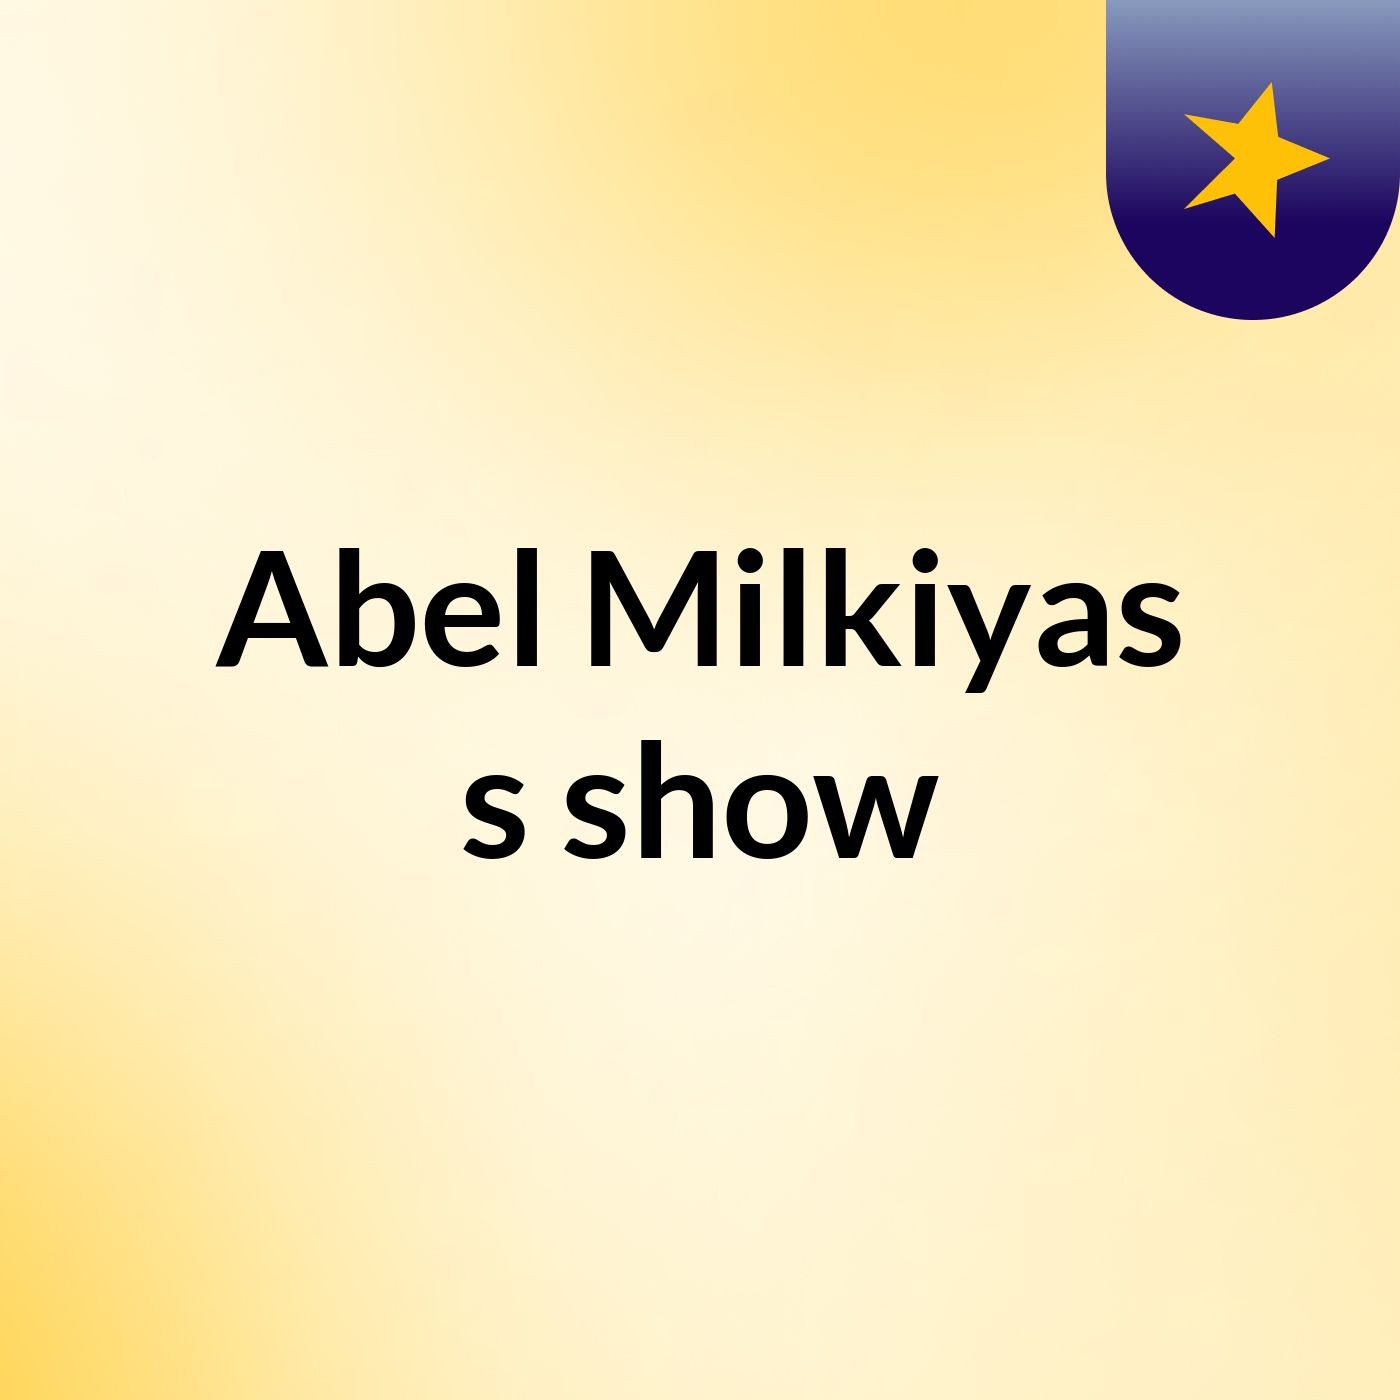 Abel Milkiyas's show